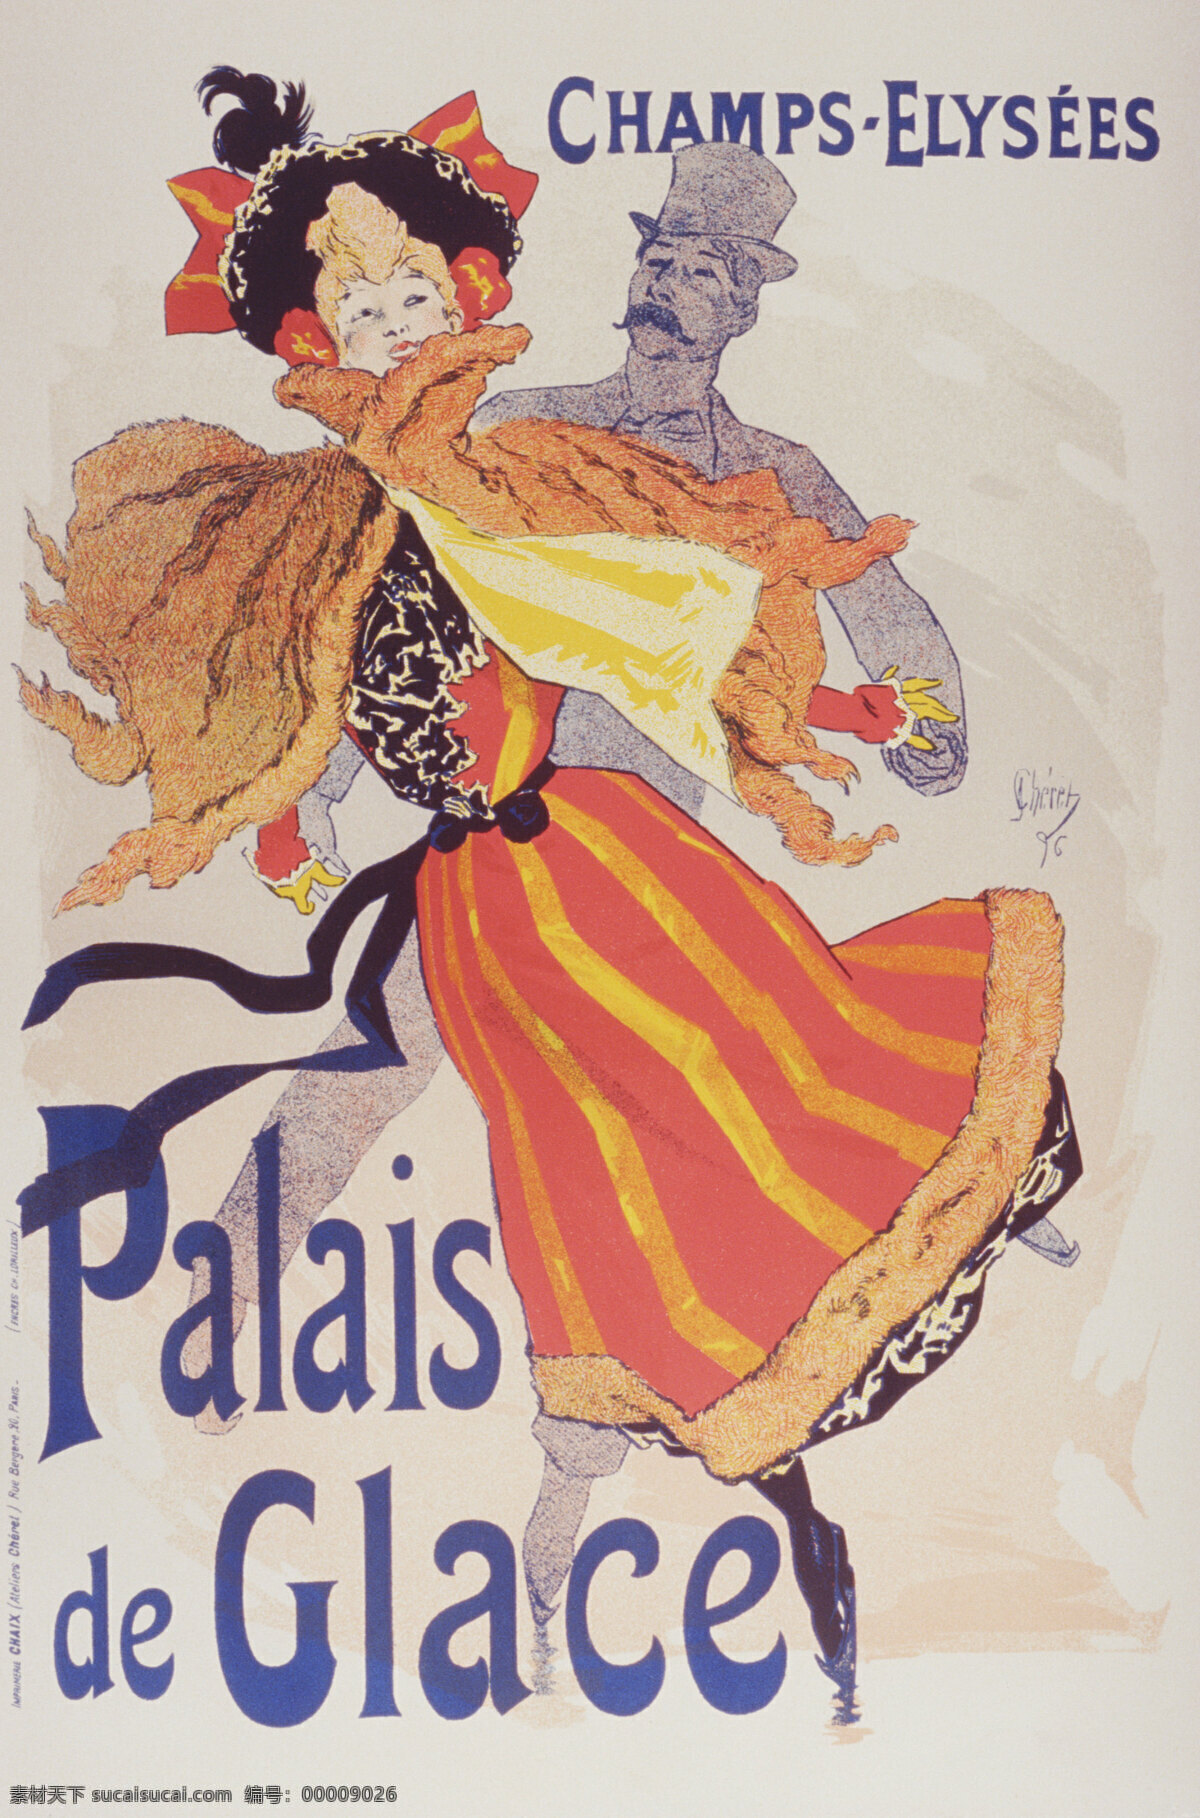 贵妇 国外 男人 女人 欧式海报 欧洲 人物 欧式 海报 设计素材 模板下载 小姐 绅士 舞蹈 跳舞 招贴设计 家居装饰素材